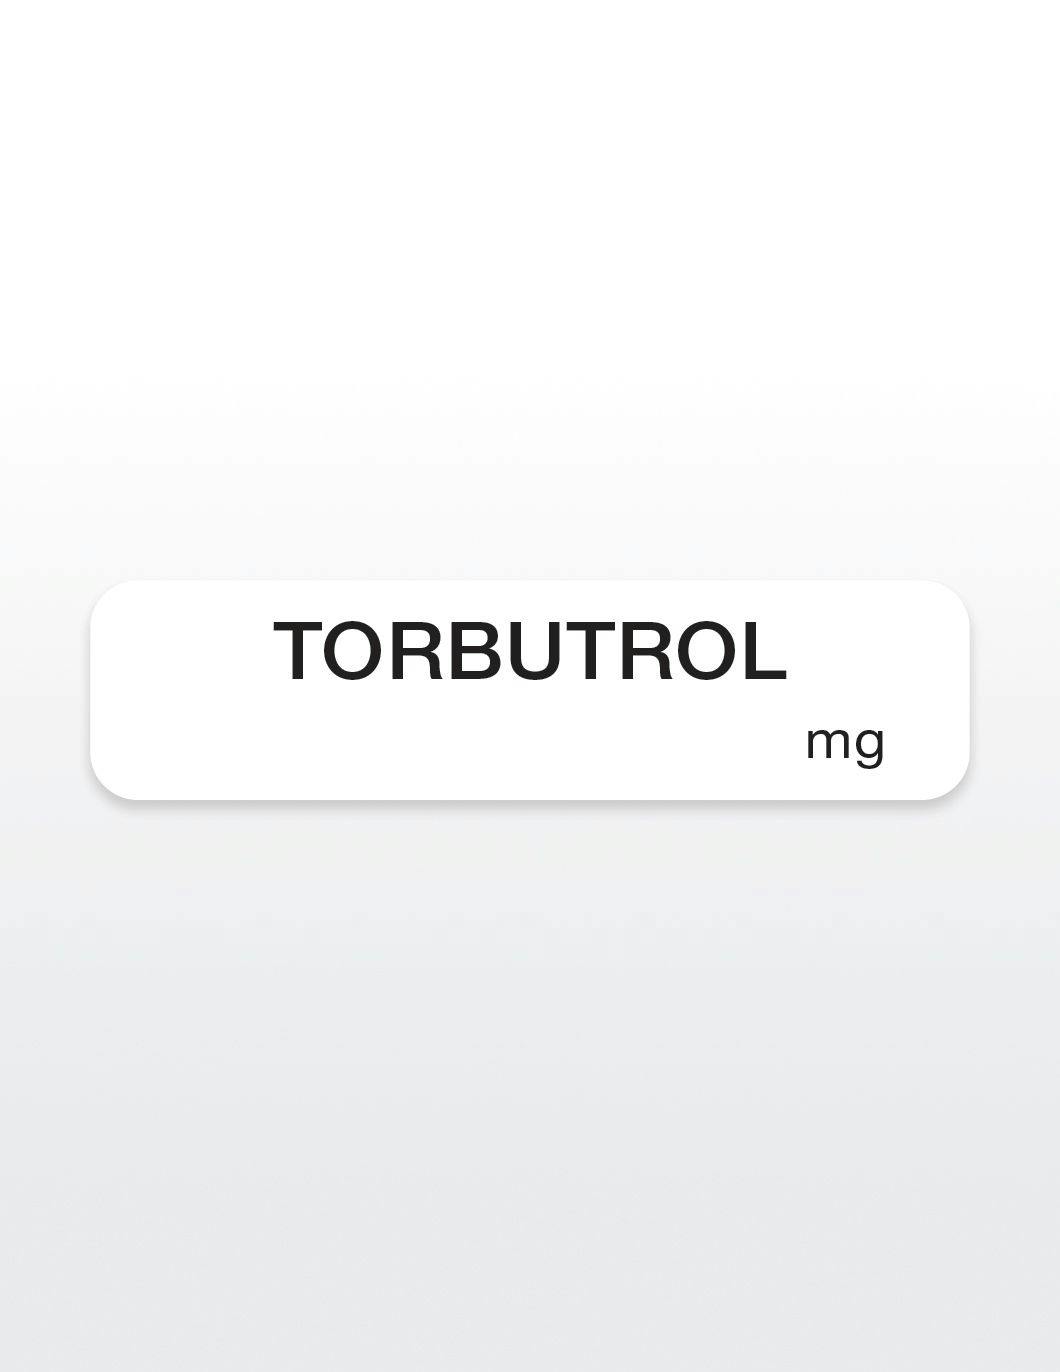 torbutrol-drug-syringe-stickers